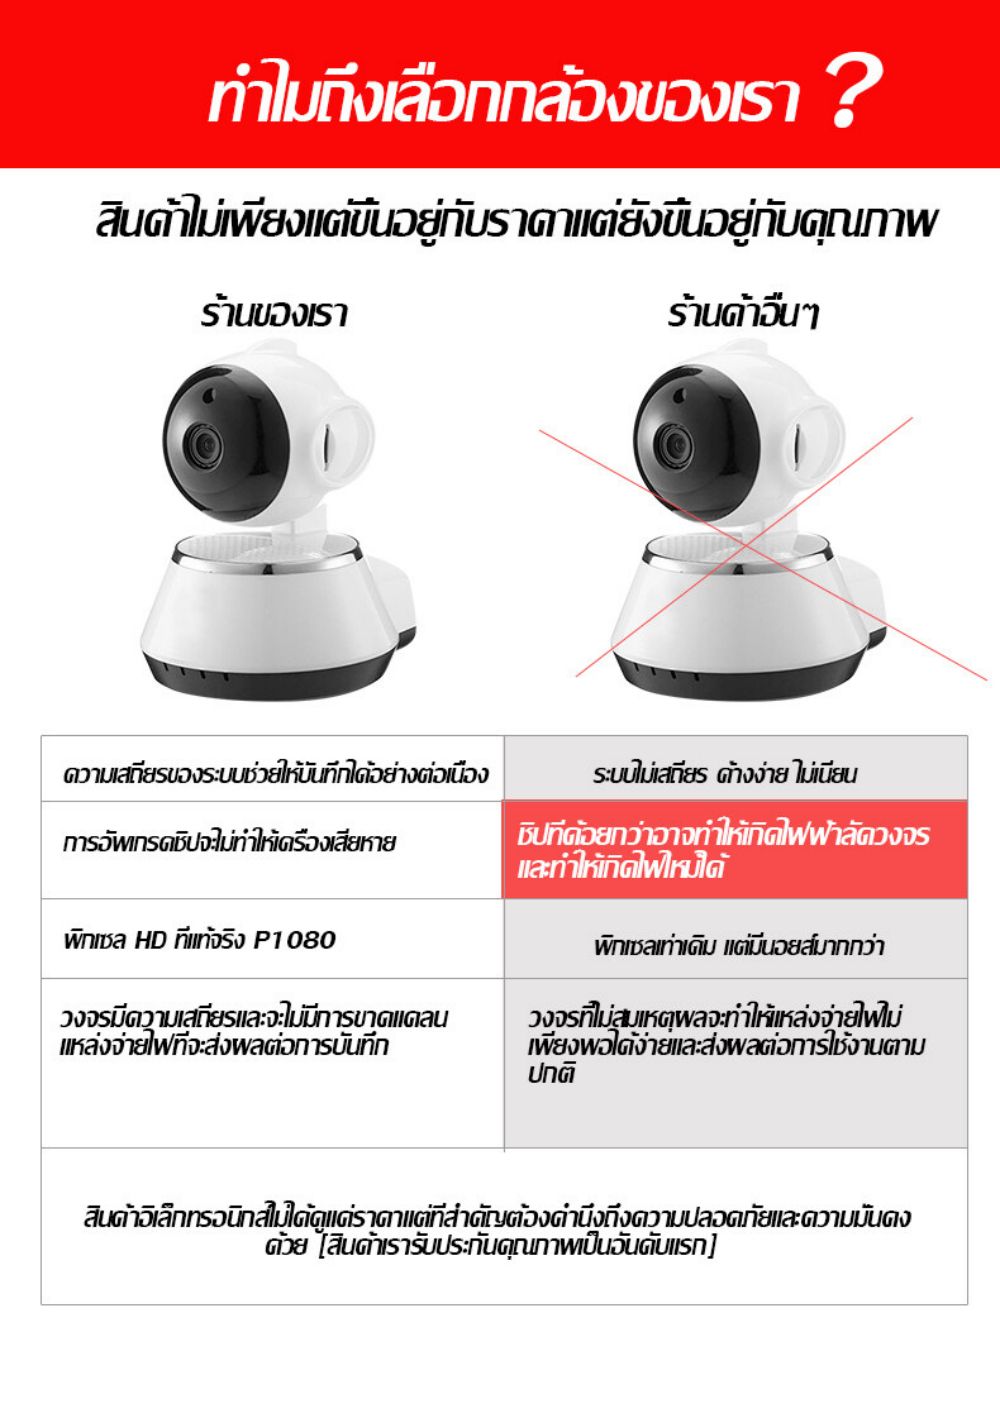 ภาพที่ให้รายละเอียดเกี่ยวกับ กล้องวงจรปิด 360 wifi ซื้อ1แถม1 กล้องรักษาความปลอดภัย V380 กล้องวงจรปิด ไร้ สาย IP Sec CCTV Camera samsung xiaomi กล้องติดบ้าน กล้องวงจรปิดดูผ่านมือถือ